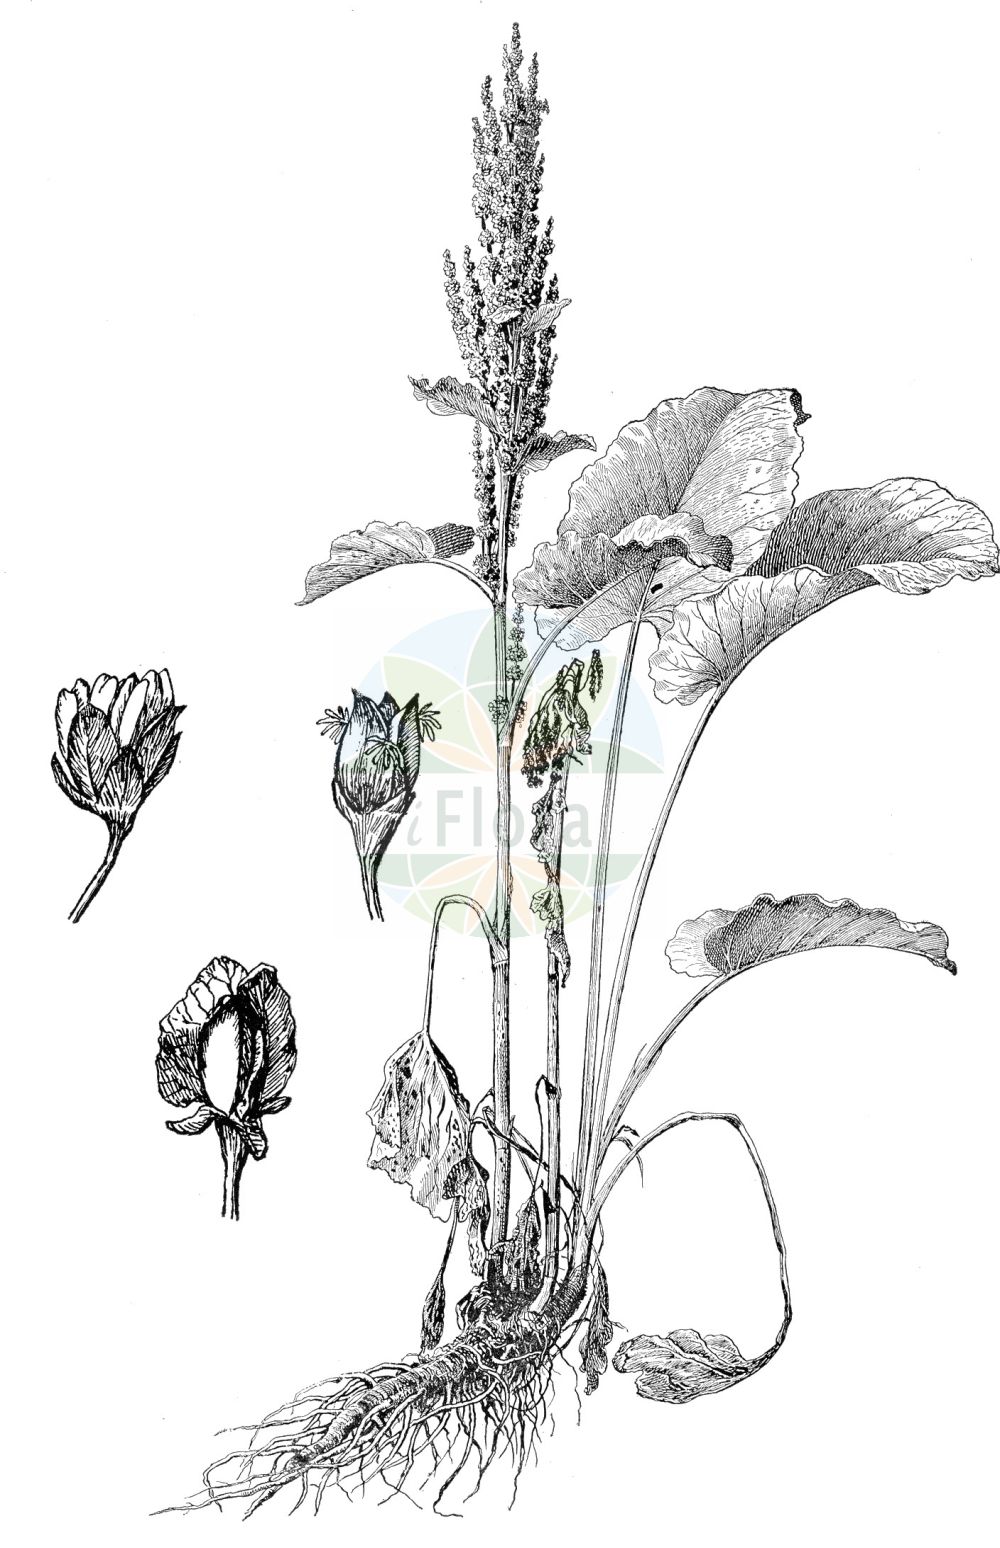 Historische Abbildung von Rumex alpinus (Alpen-Ampfer - Monk's-rhubarb). Das Bild zeigt Blatt, Bluete, Frucht und Same. ---- Historical Drawing of Rumex alpinus (Alpen-Ampfer - Monk's-rhubarb). The image is showing leaf, flower, fruit and seed.(Rumex alpinus,Alpen-Ampfer,Monk's-rhubarb,Rumex alpinus,Rumex pseudoalpinus,Alpen-Ampfer,Monk's-rhubarb,Alpine Dock,Munk's Rhubarb,Alpine Rhubarb,Rumex,Ampfer,Sorrel,Polygonaceae,Knöterichgewächse,Knotgrass family,Blatt,Bluete,Frucht,Same,leaf,flower,fruit,seed,Oltmanns (1927))